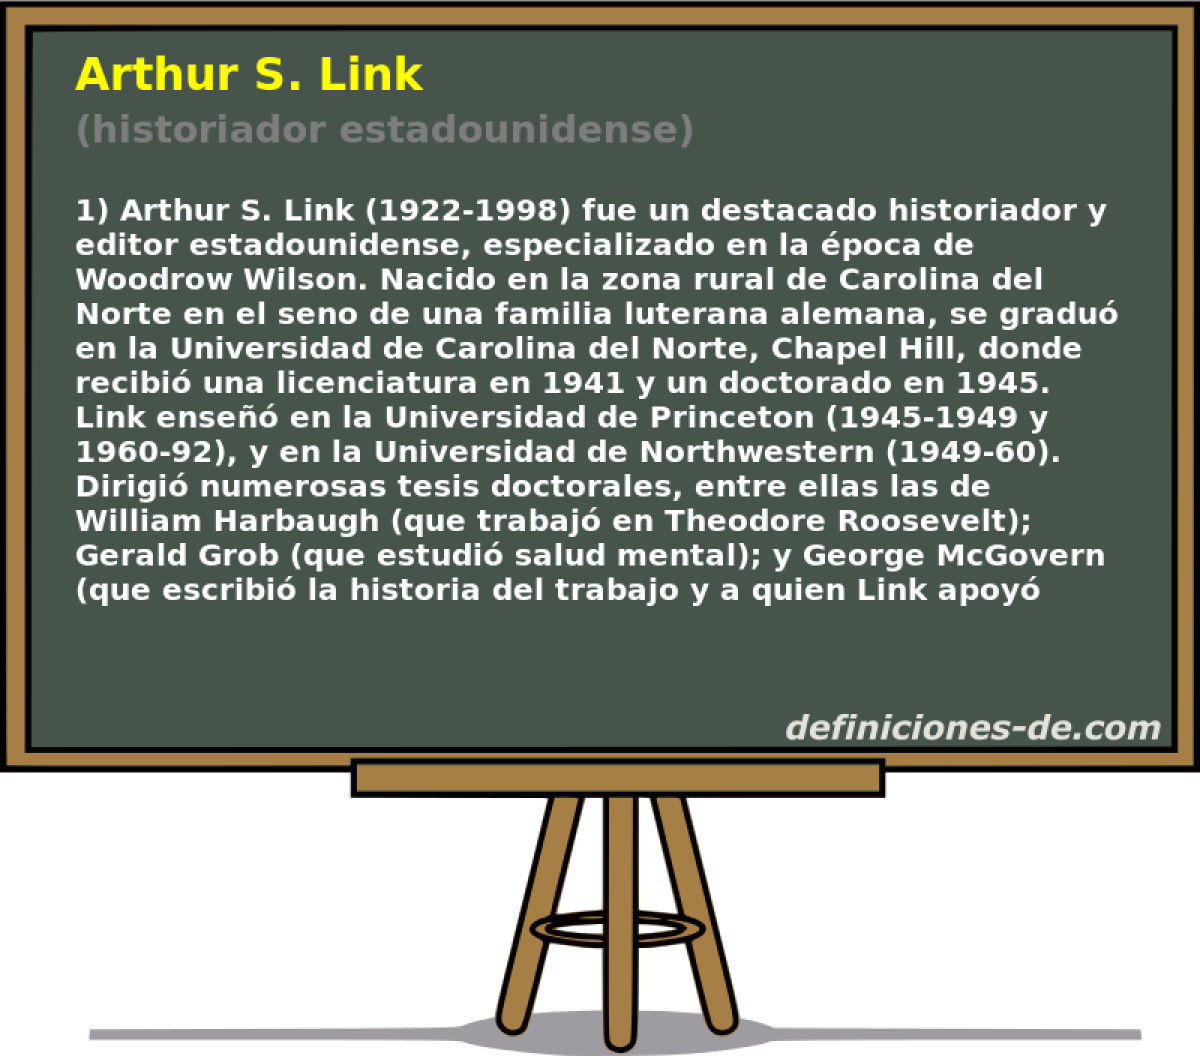 Arthur S. Link (historiador estadounidense)